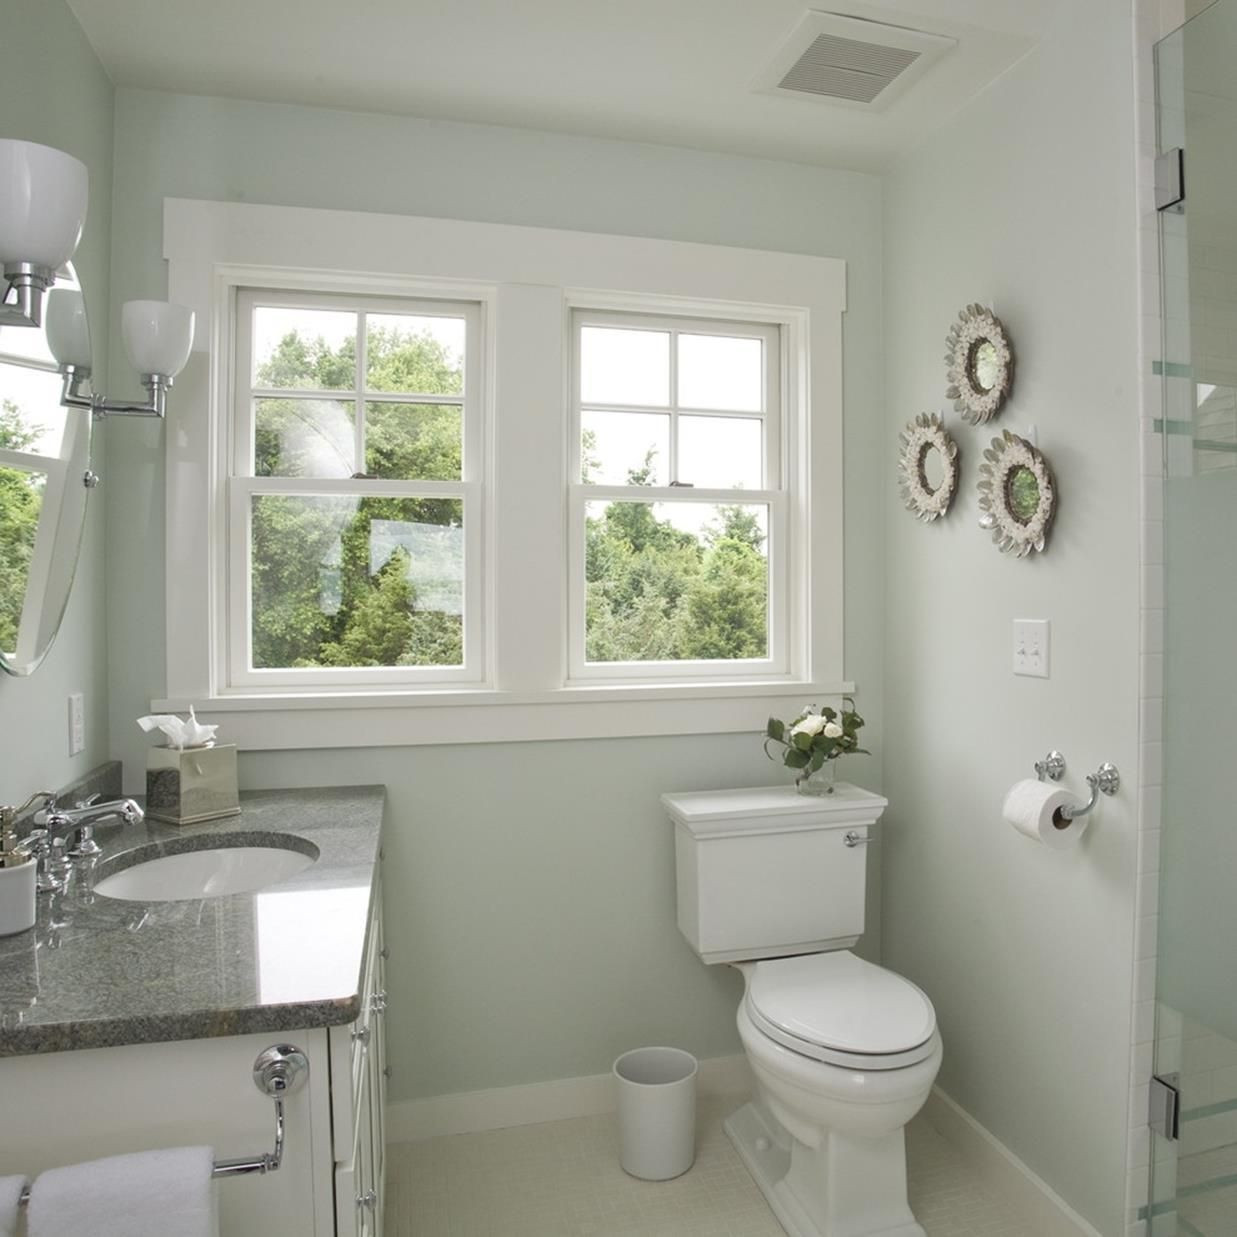 Popular Paint Colors For Bathrooms
 42 Best Paint Colors for Small Bathrooms Your Bathroom